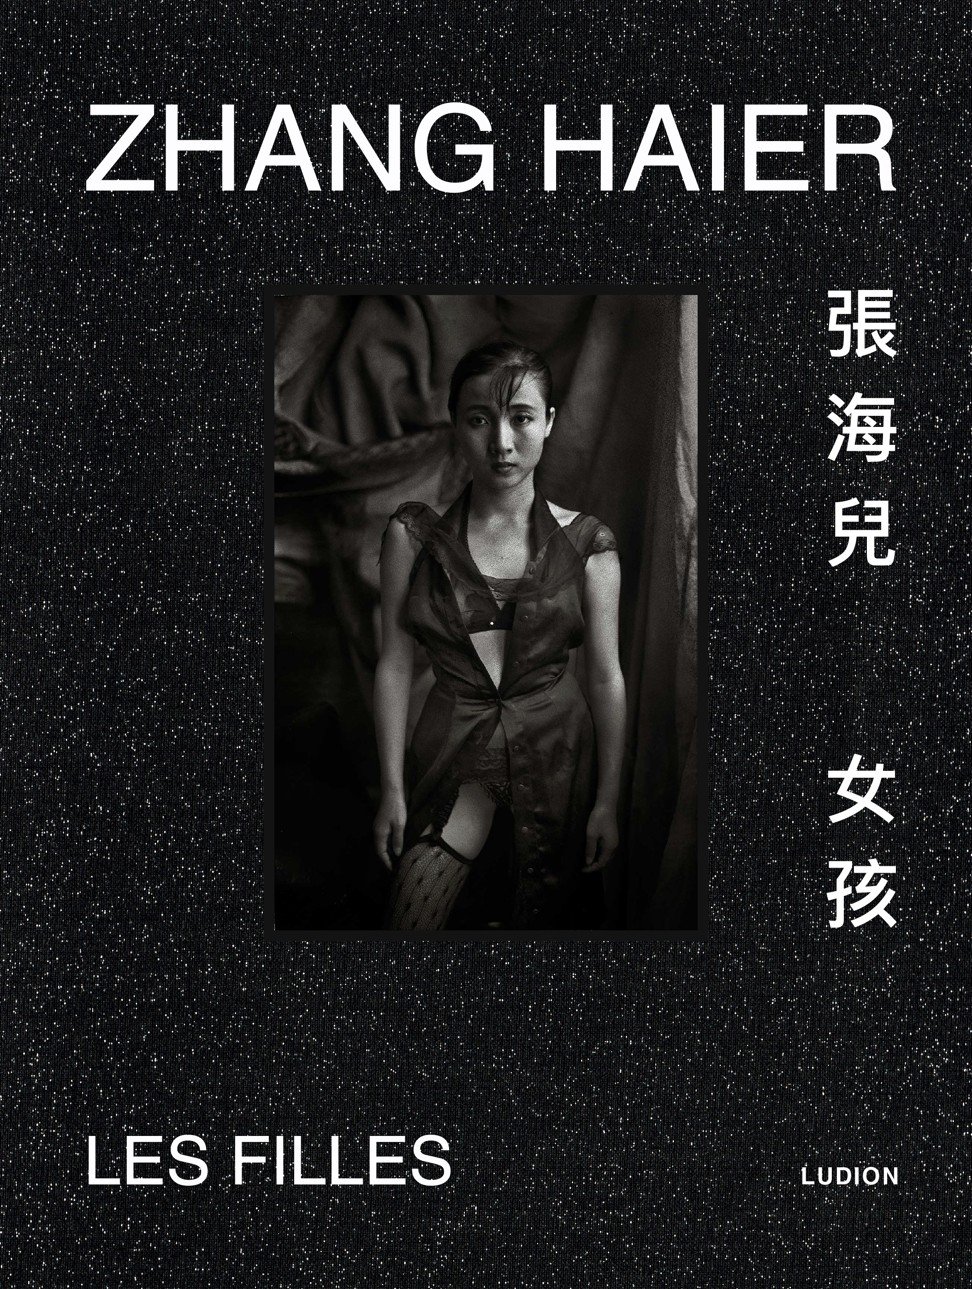 Zhang Hai’er: Les filles cover.